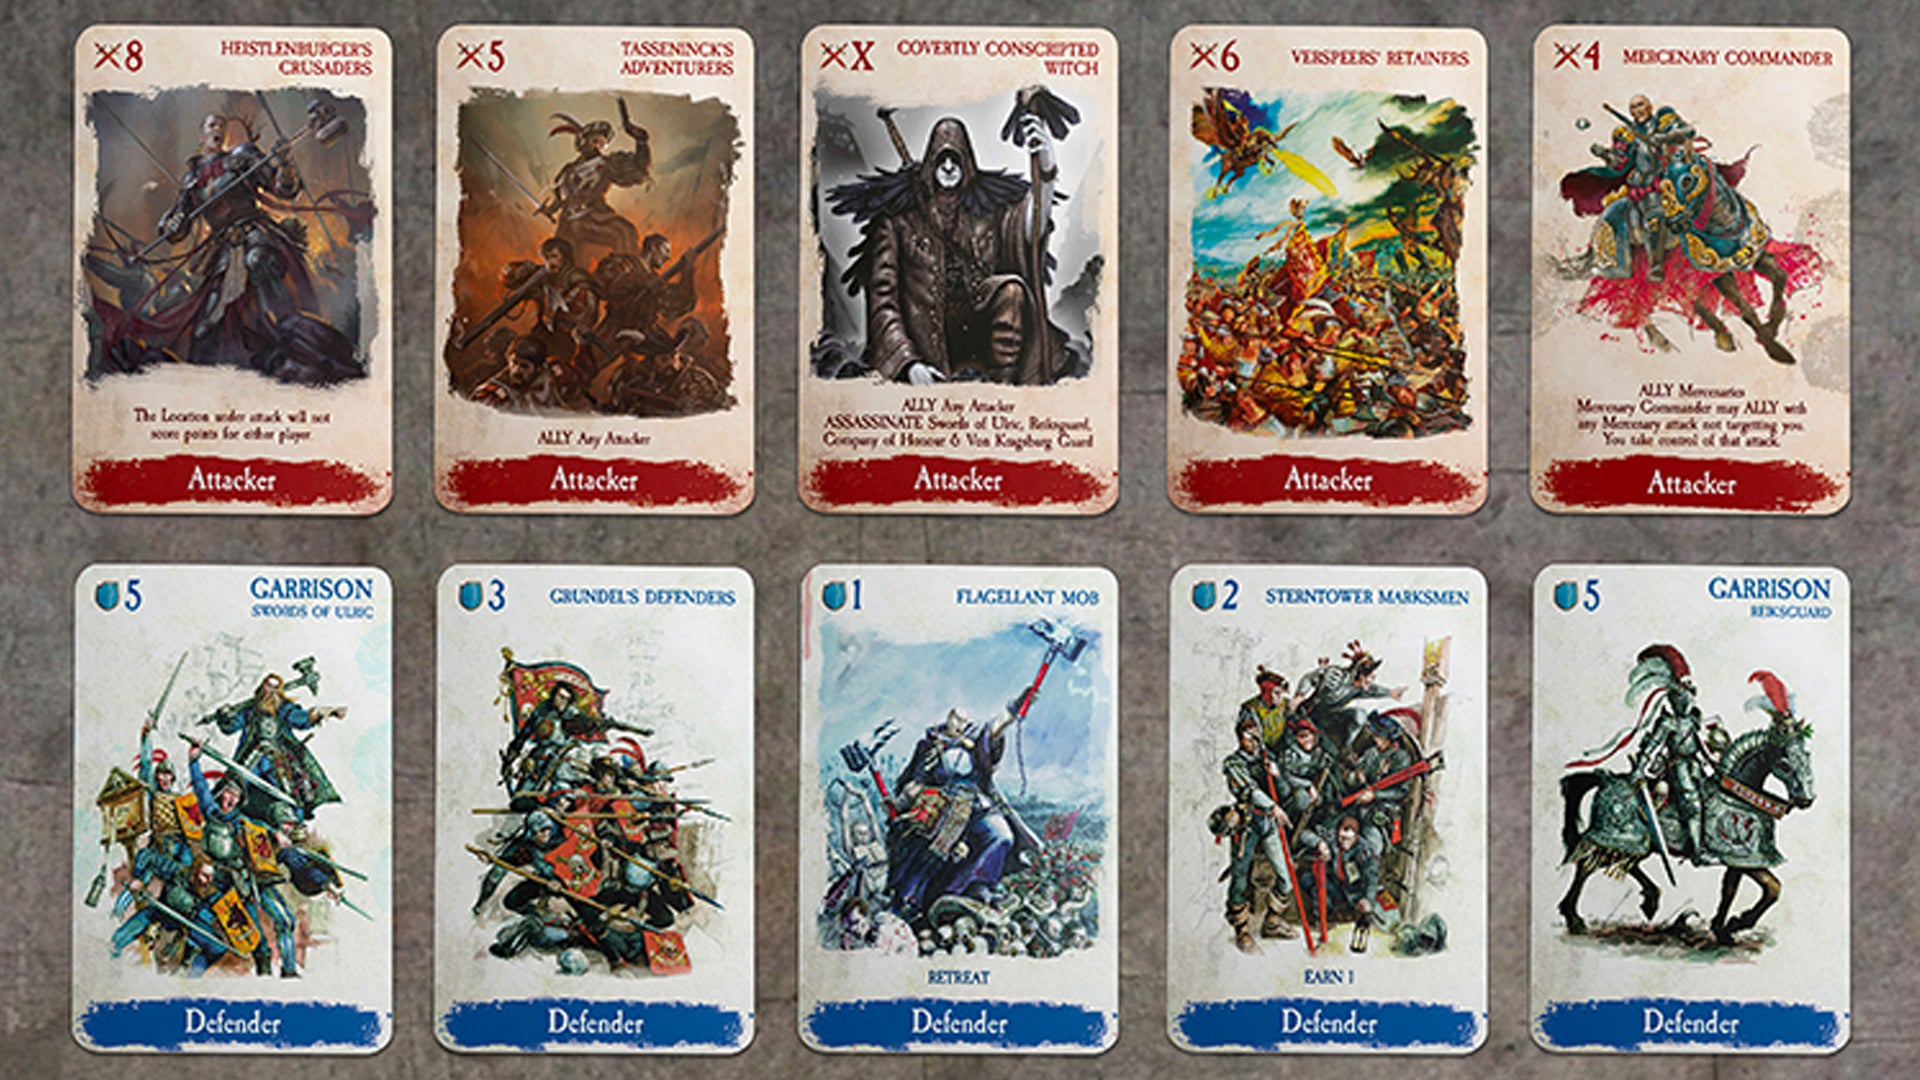 Warhammer cards. Fantasy Card game. Warhammer карточная игра. Игральные карты Warhammer 40000. Карты Таро по Warhammer.